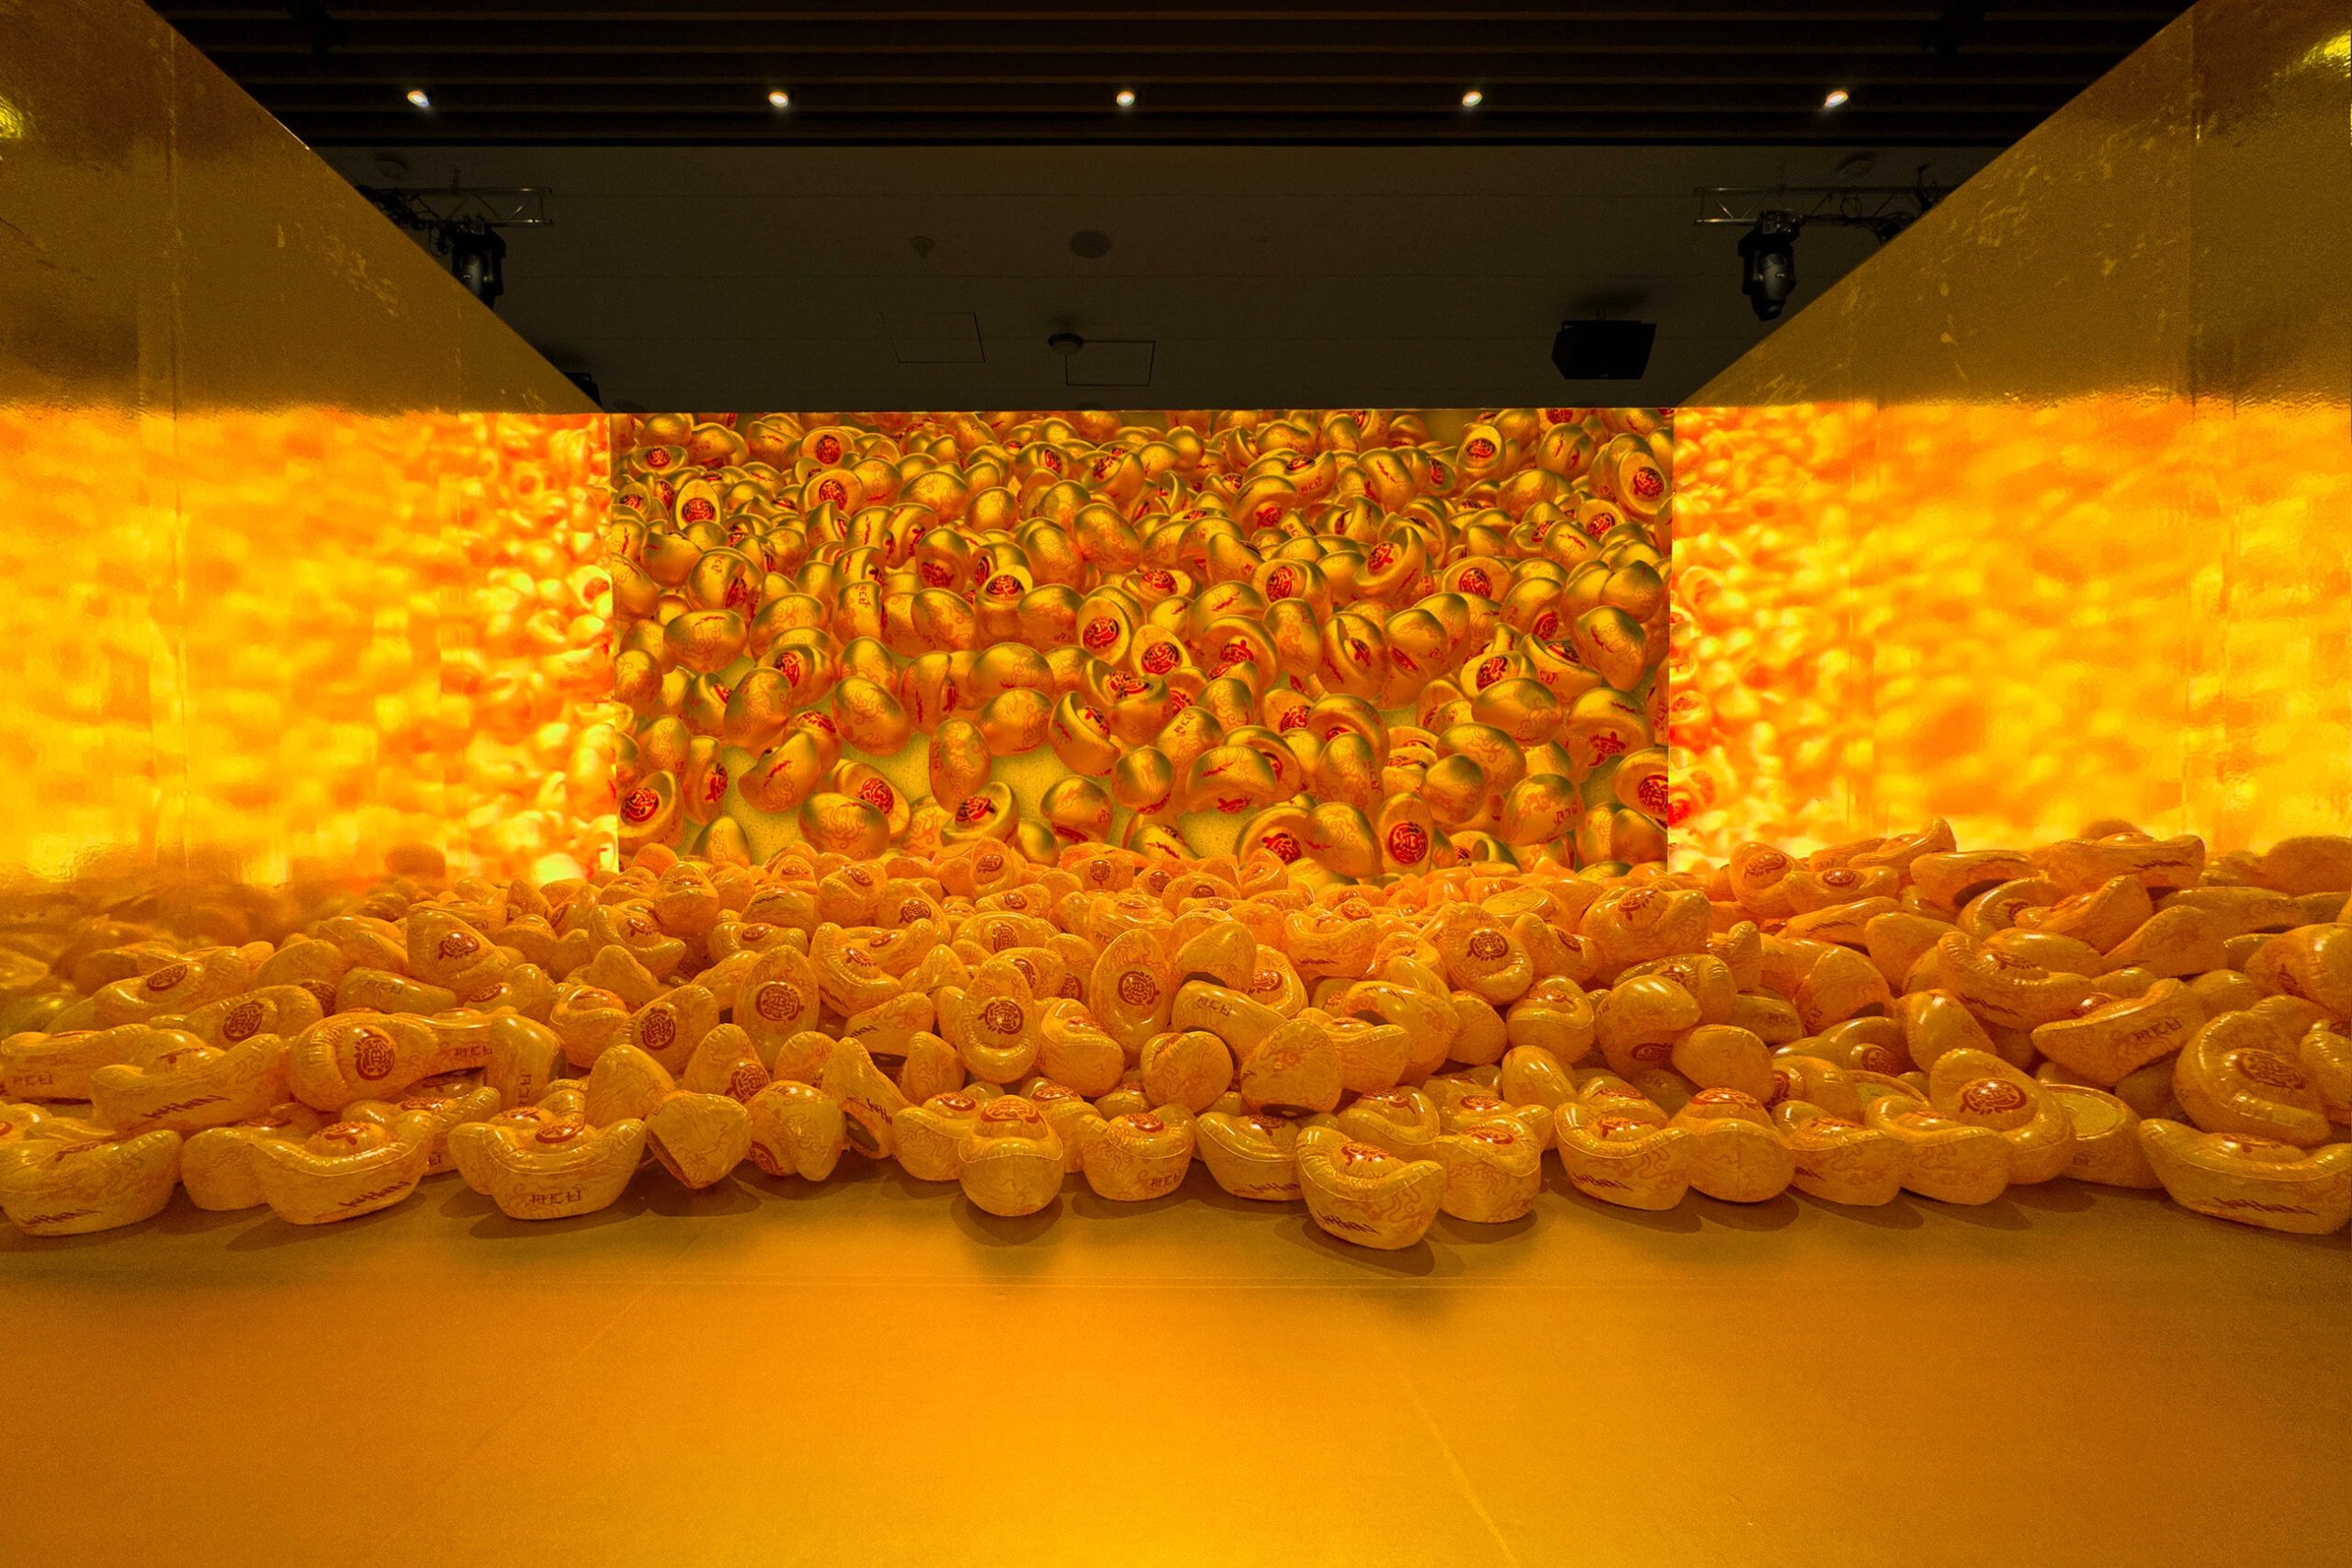 Jahan Loh 携手 ACU 举办「黄金满屋」装置艺术展览